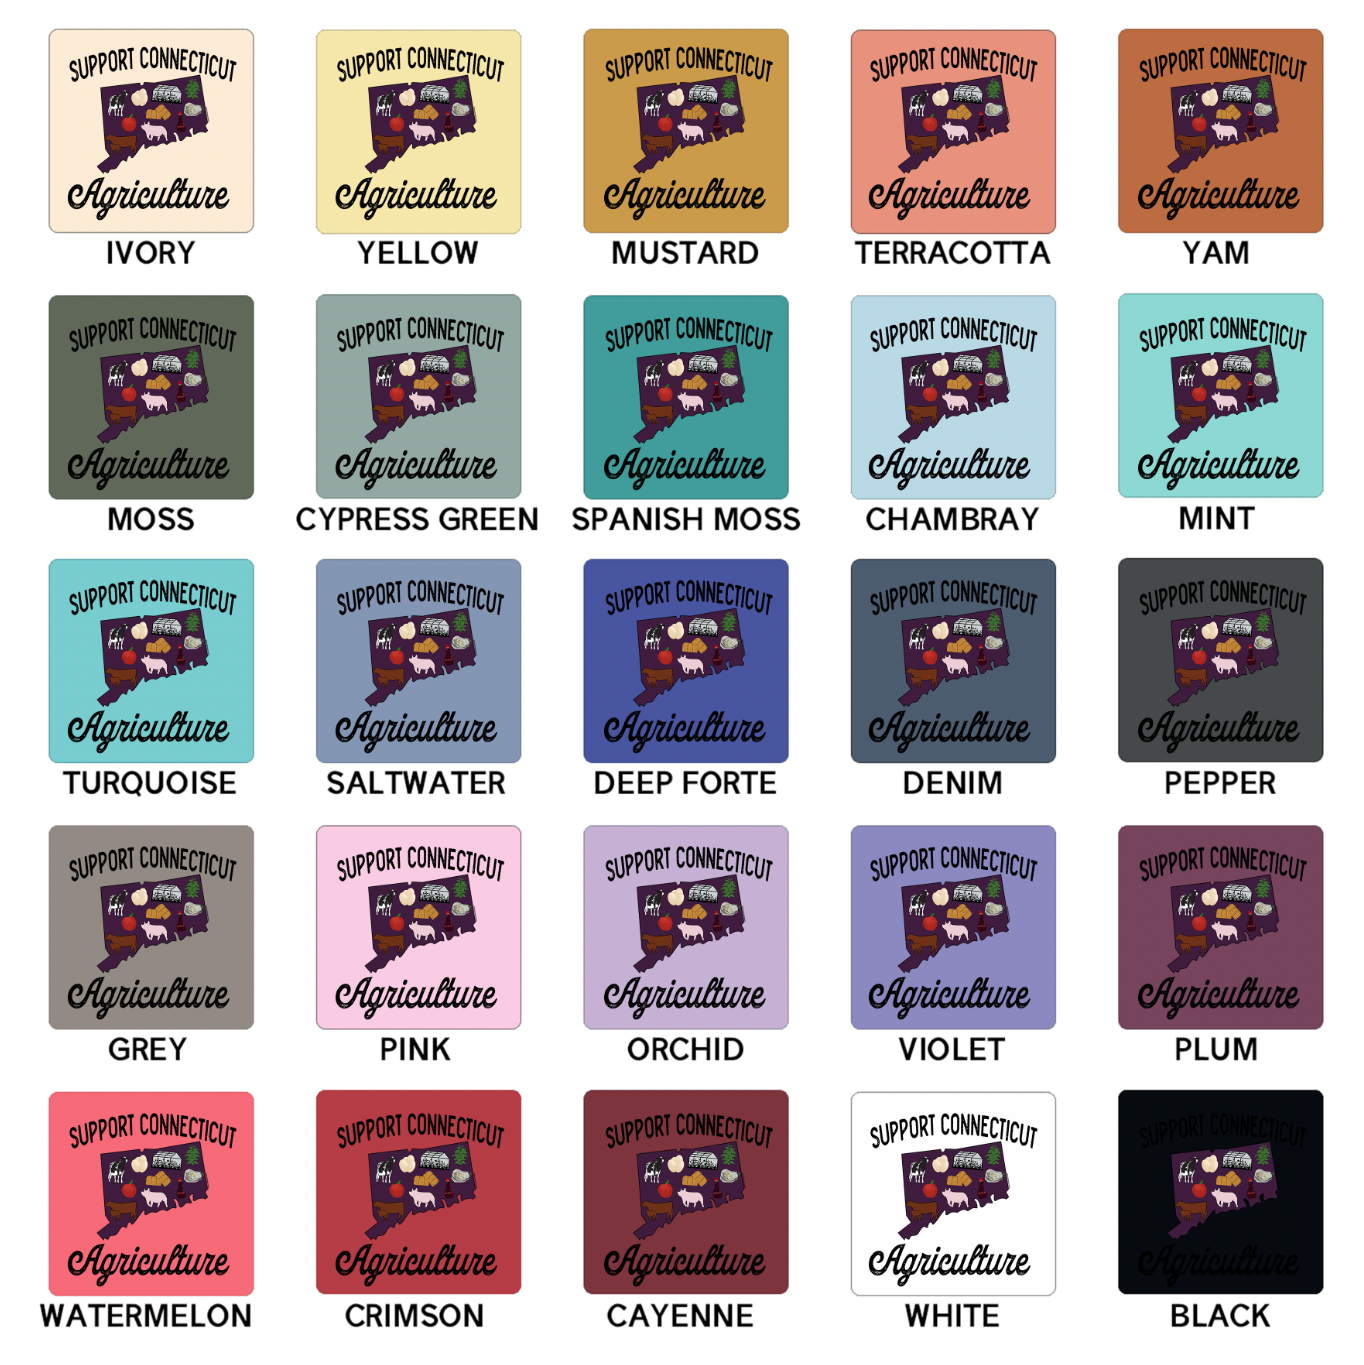 Support Connecticut Agriculture ComfortWash/ComfortColor T-Shirt (S-4XL) - Multiple Colors!